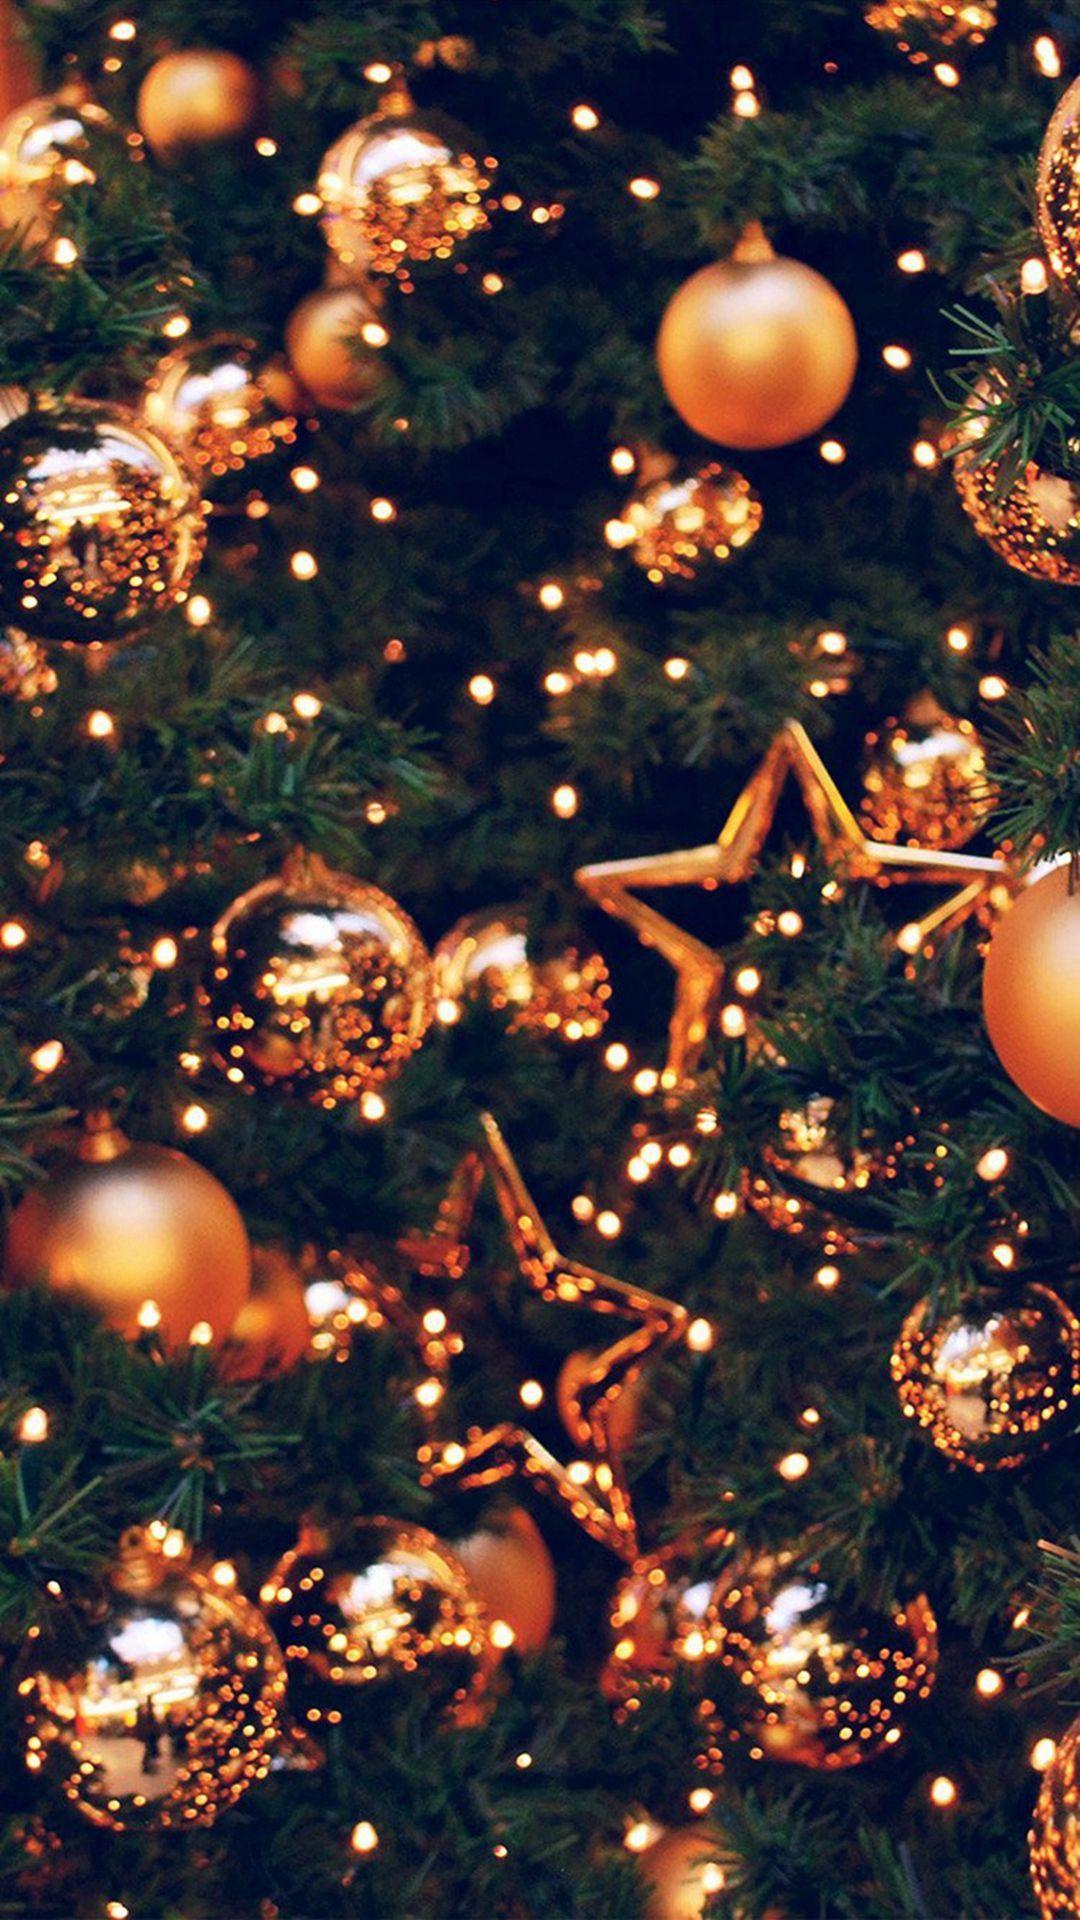 Những hình nền iPhone Giáng Sinh với đèn sẽ mang lại cho bạn ấn tượng khó quên. Những chùm đèn lấp lánh trên nền màu sắc Giáng sinh sẽ kết hợp cùng chiếc iPhone của bạn tạo ra hiệu ứng đẹp mắt. Đừng bỏ lỡ cơ hội trang trí cho chiếc iPhone của bạn với những hình nền Giáng sinh tuyệt đẹp này.